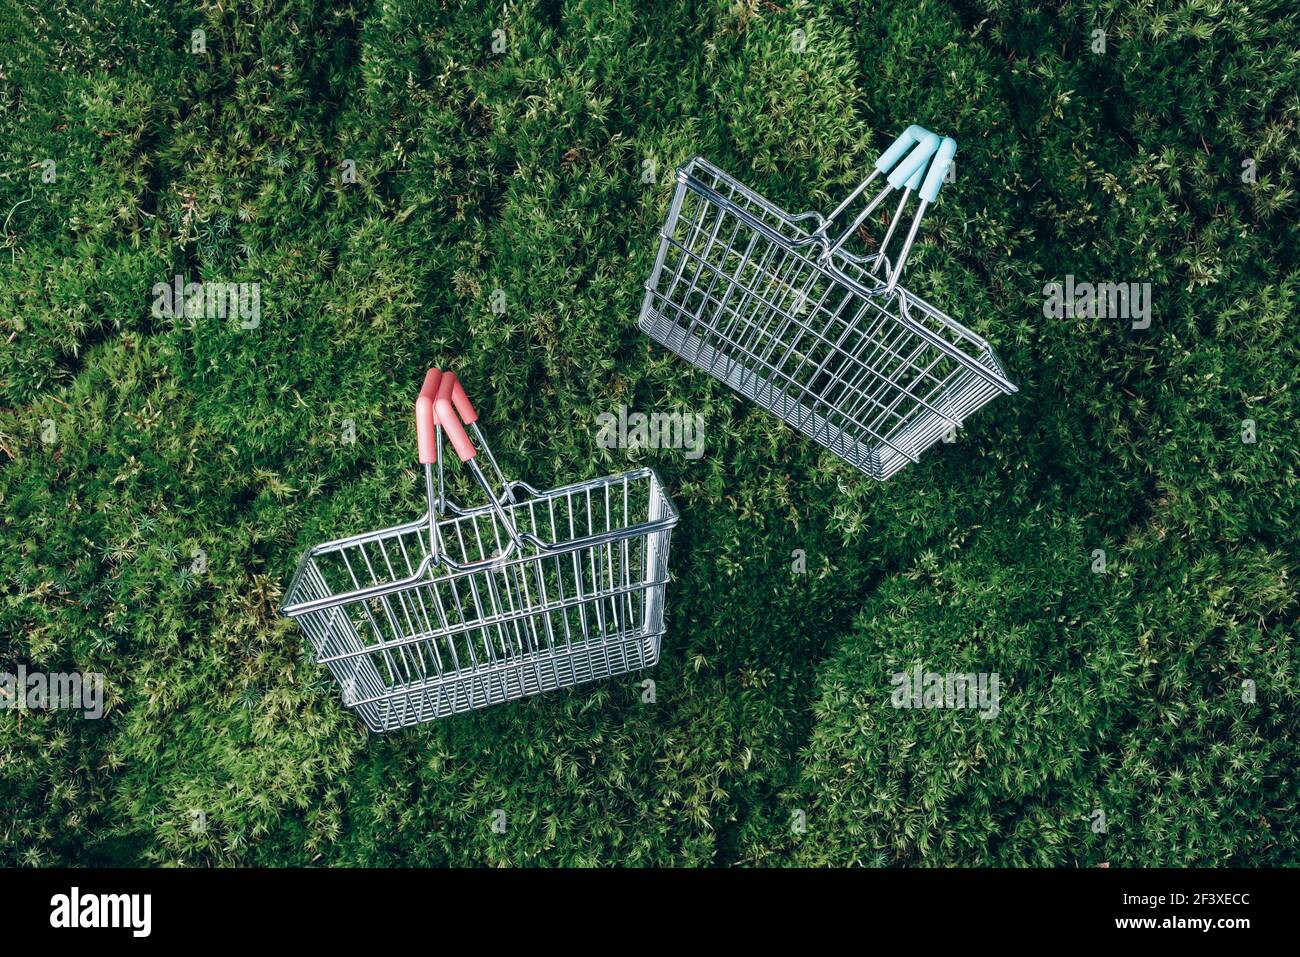 Nachhaltiger Lebensstil. Draufsicht auf Supermarkt-Warenkorb auf grünem Gras, Moos Hintergrund. Black friday Verkauf, Rabatt, shopaholism, Ökologie Stockfoto